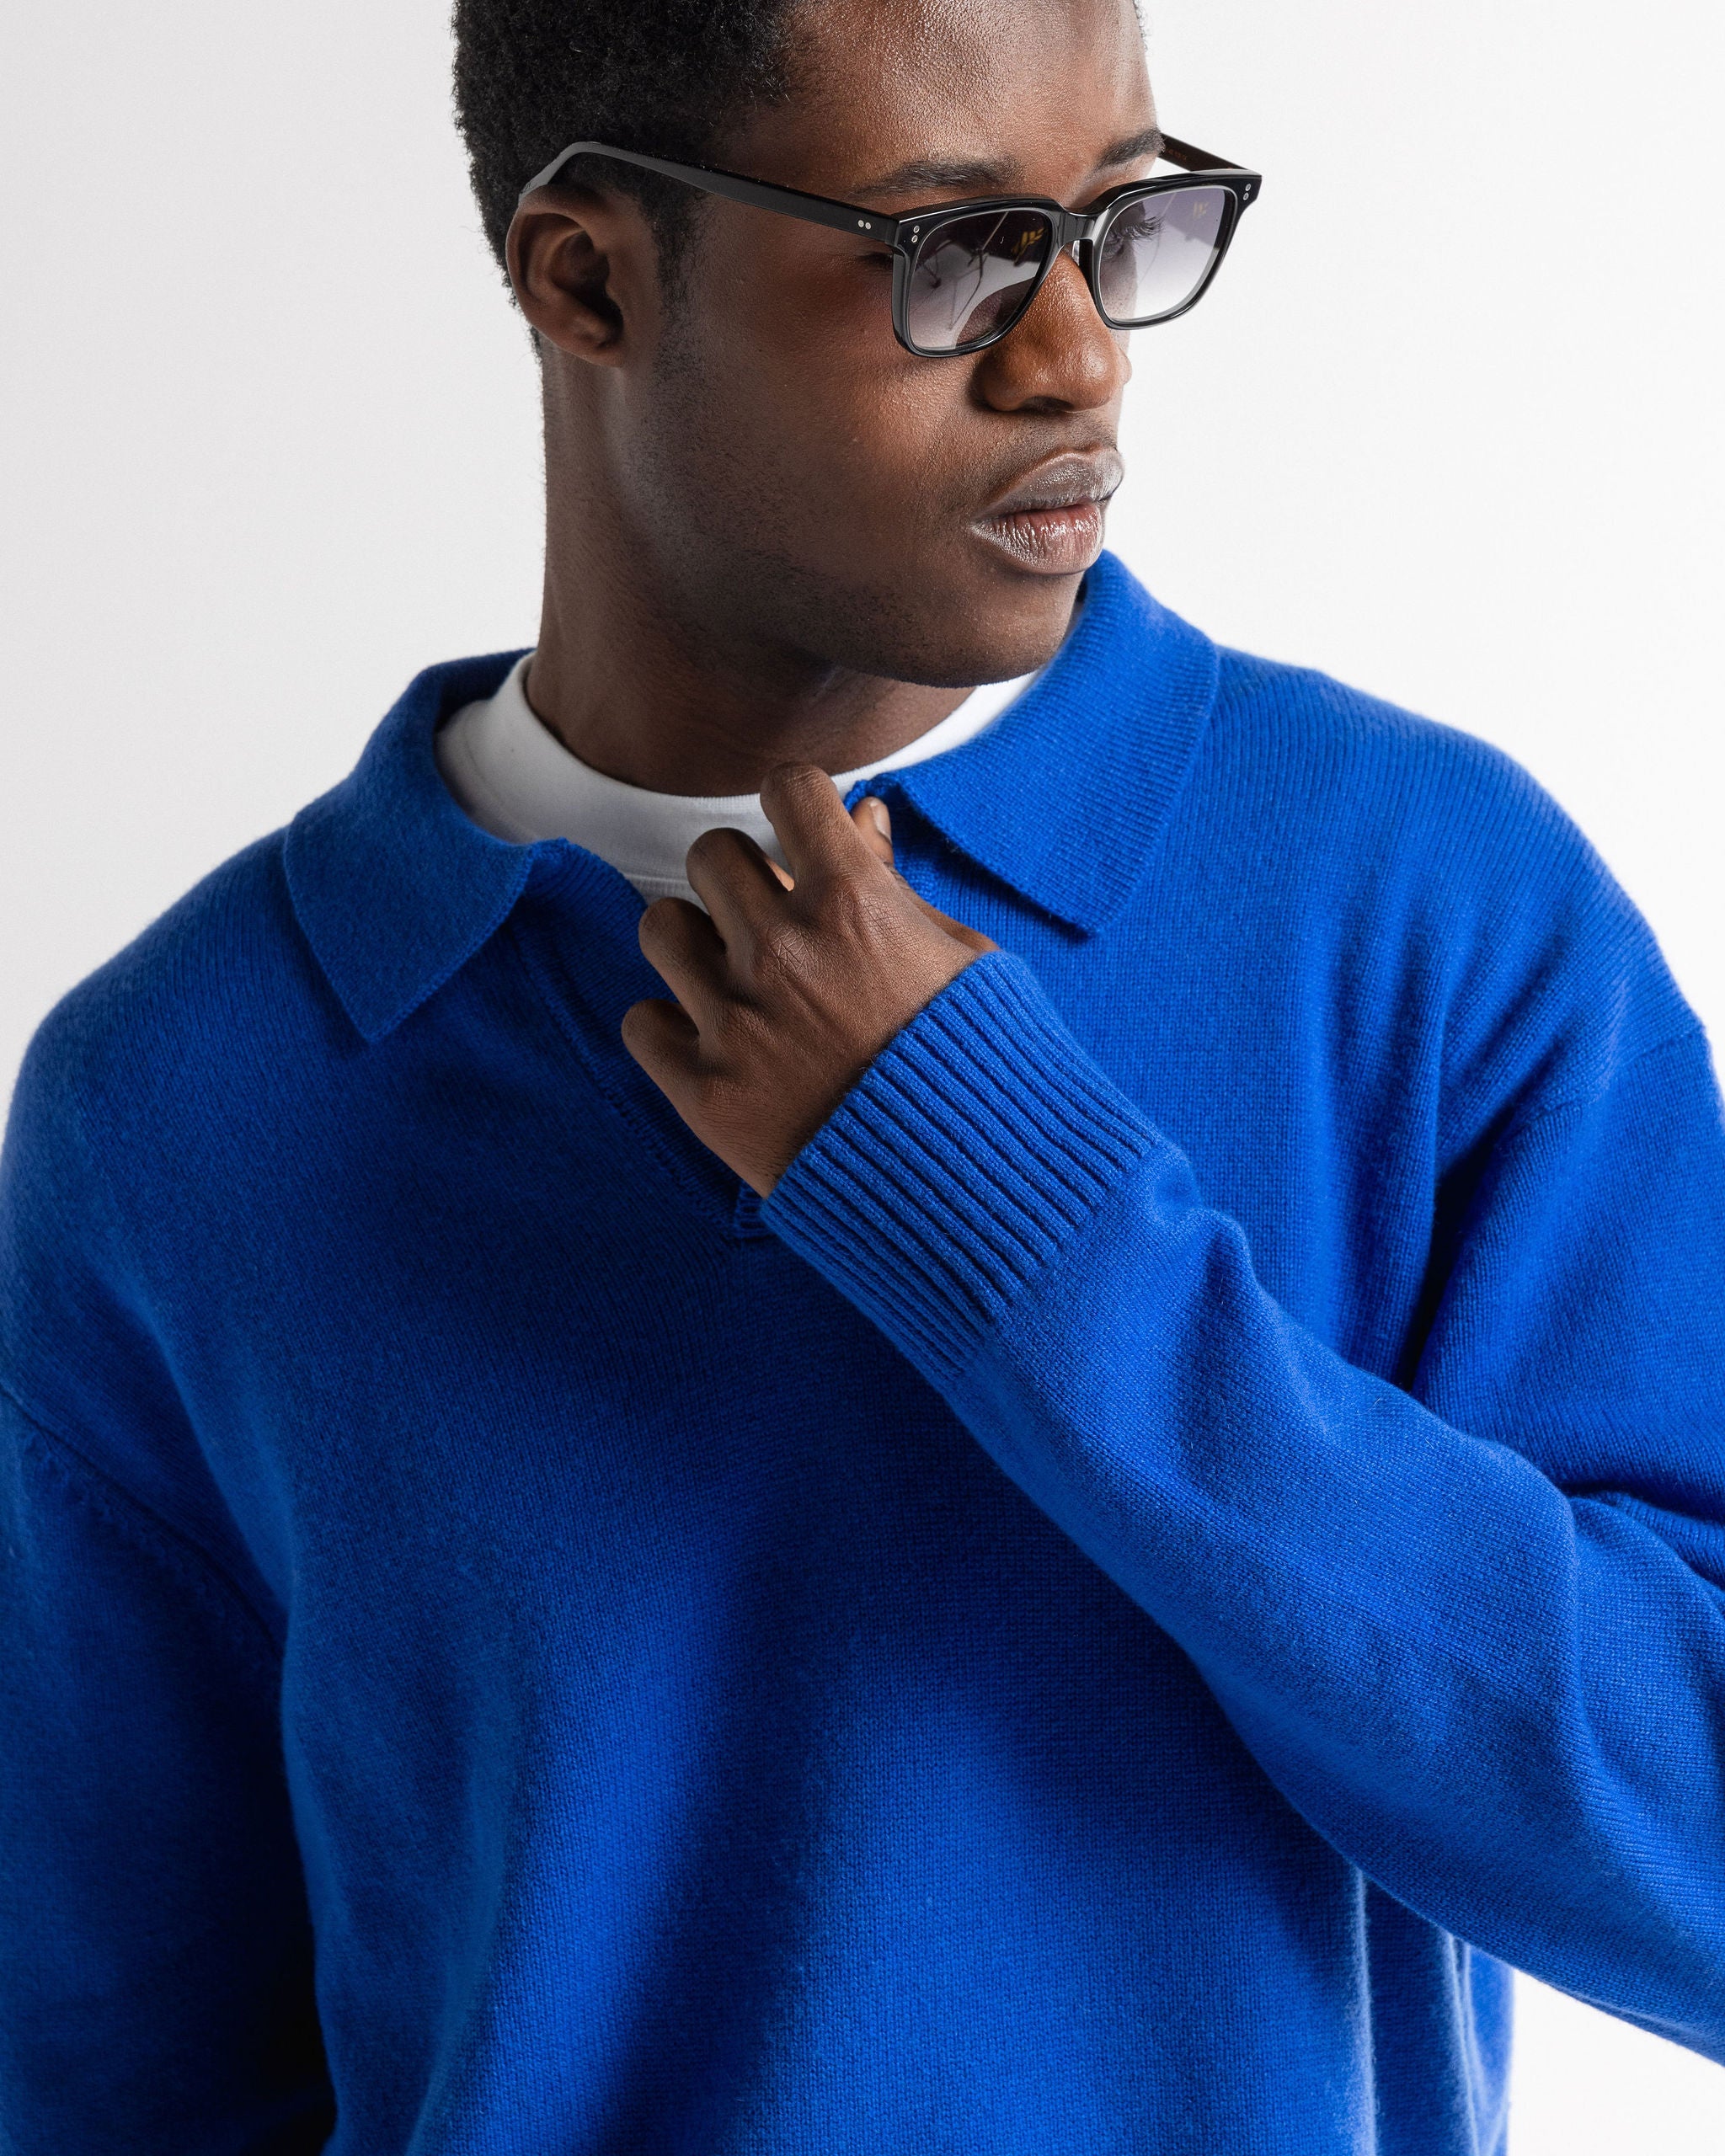 Garçon Knit Sweater Cobalt Blue